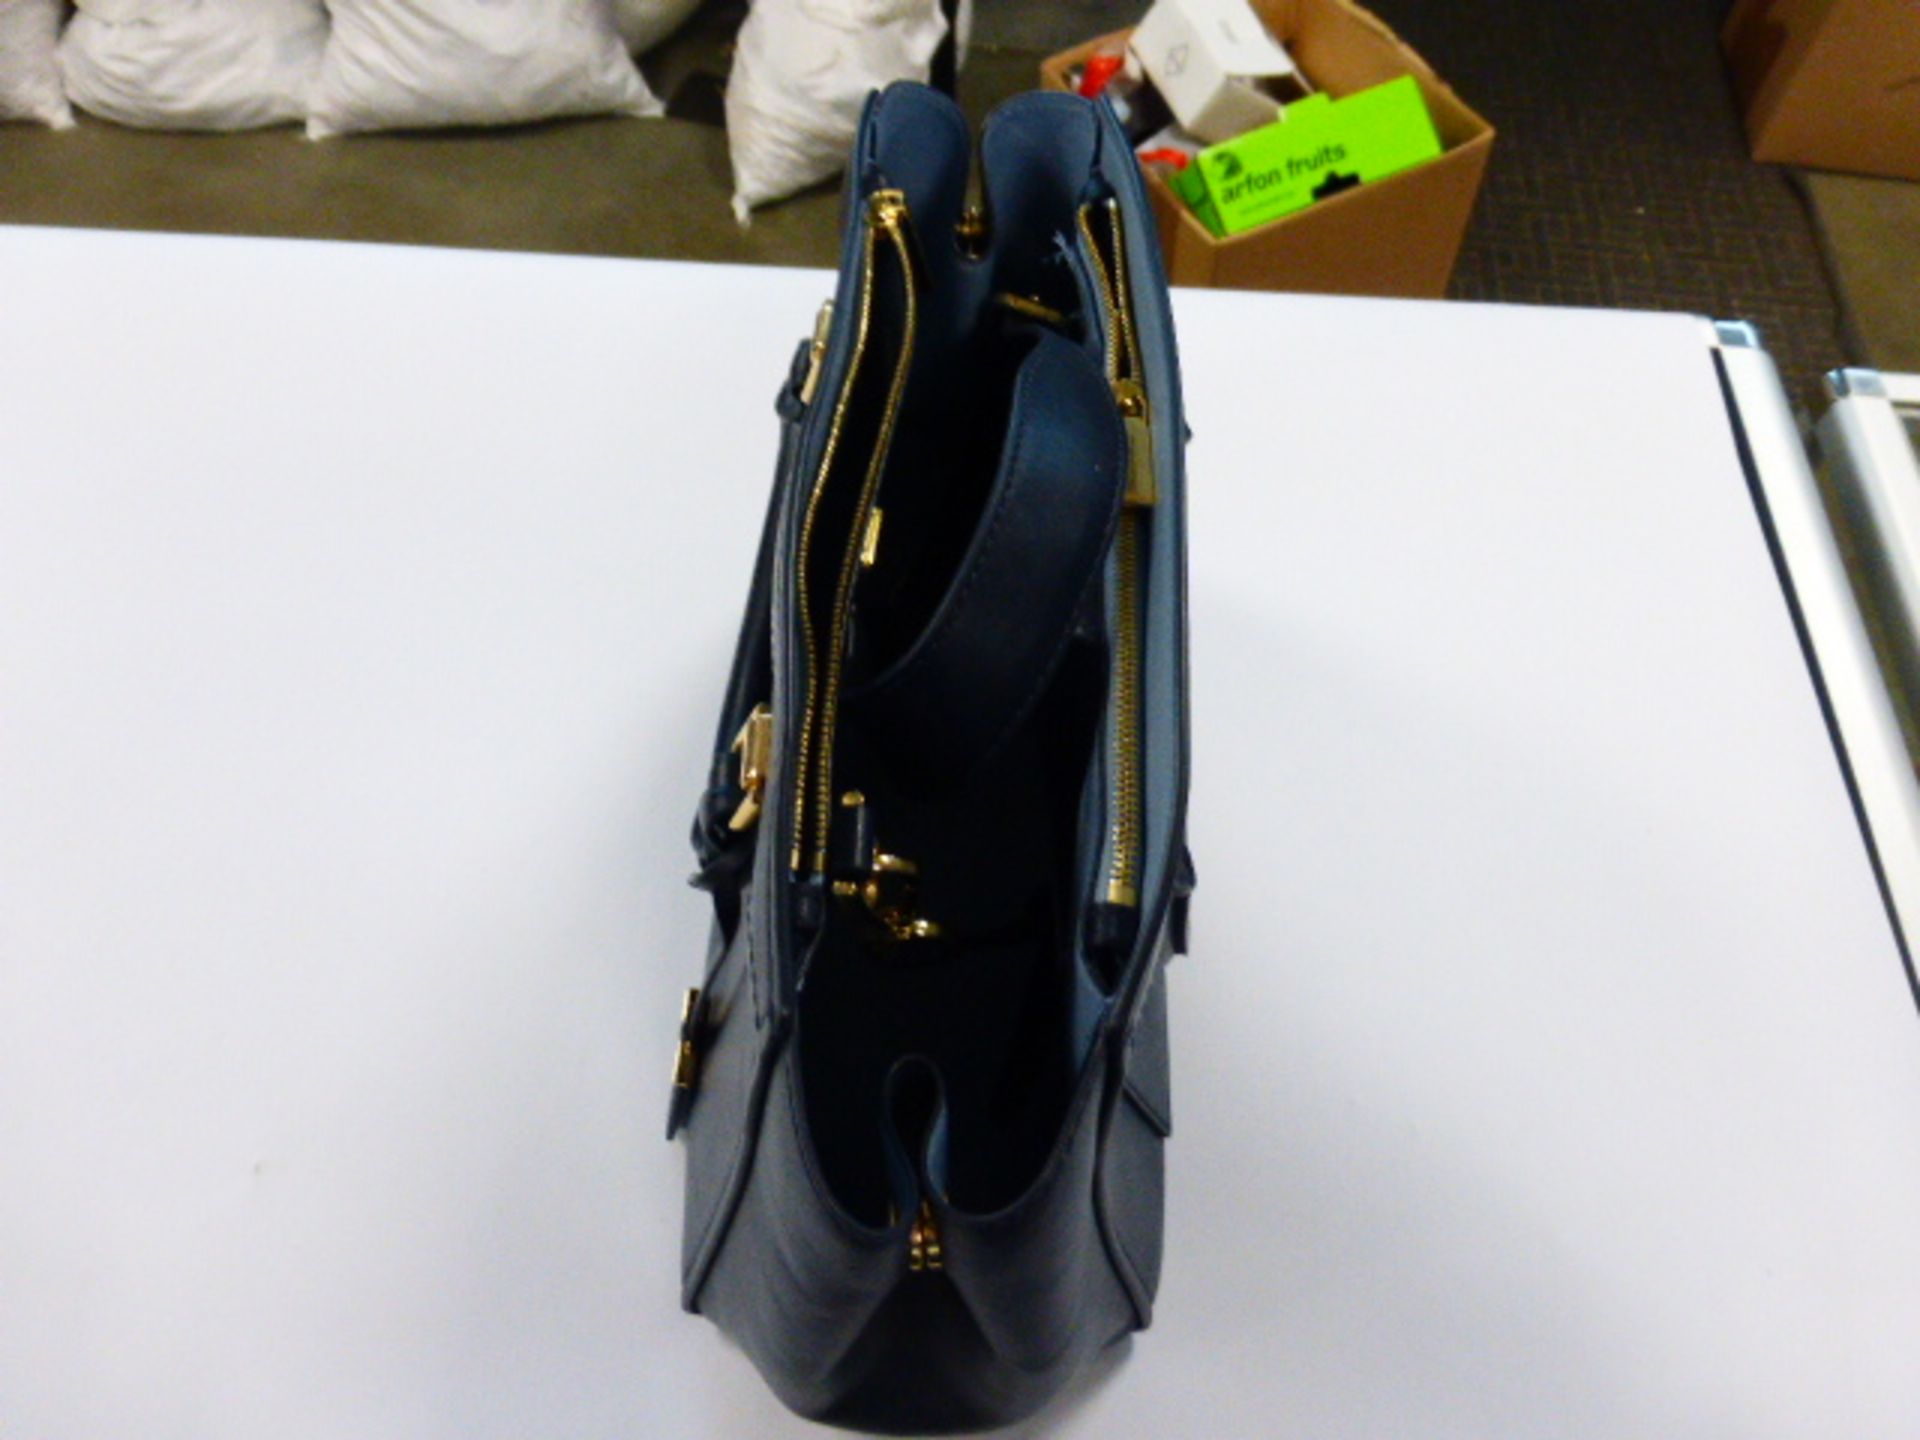 Michael Kors ladies blue leather handbag - Image 2 of 2